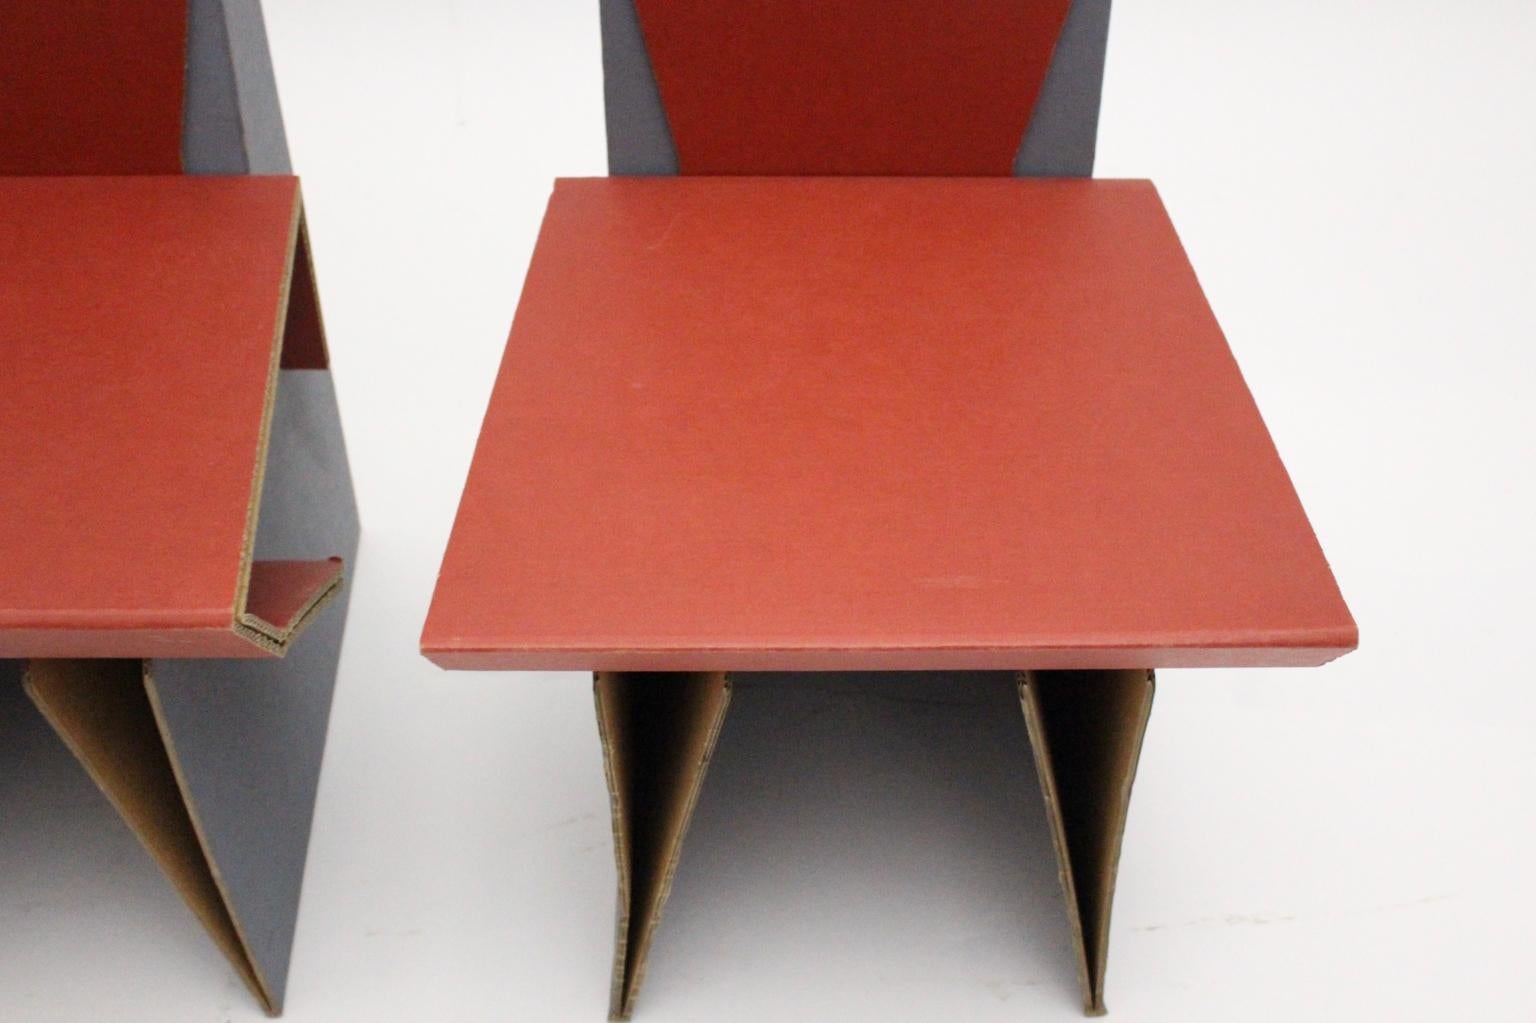 Paire moderne de chaises stables en carton dans les couleurs rouge et bleu circa 1990.
Il est possible de démonter certaines parties du carton.
Très bon état vintage
mesures approximatives :
Largeur : 46 cm
Profondeur : 55 cm
Hauteur : 83 cm
Hauteur